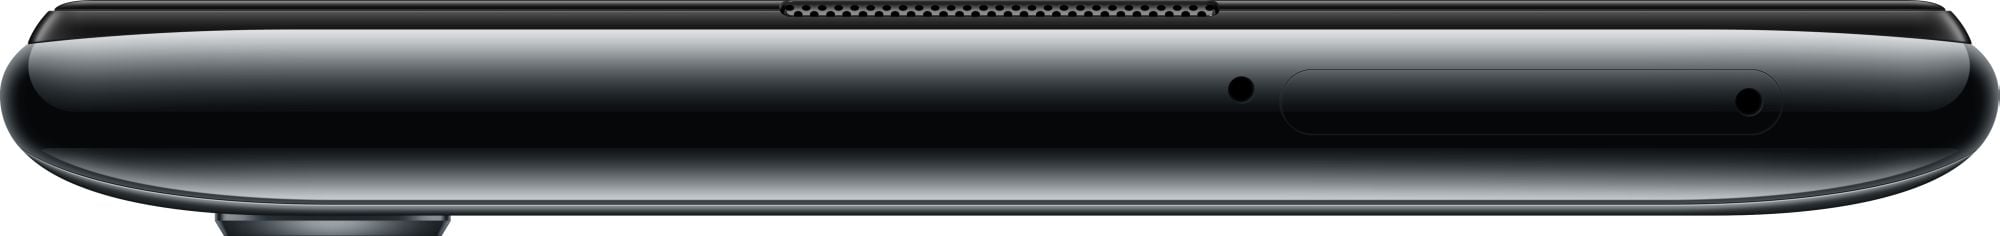 Huawei Honor 10i 128GB Black